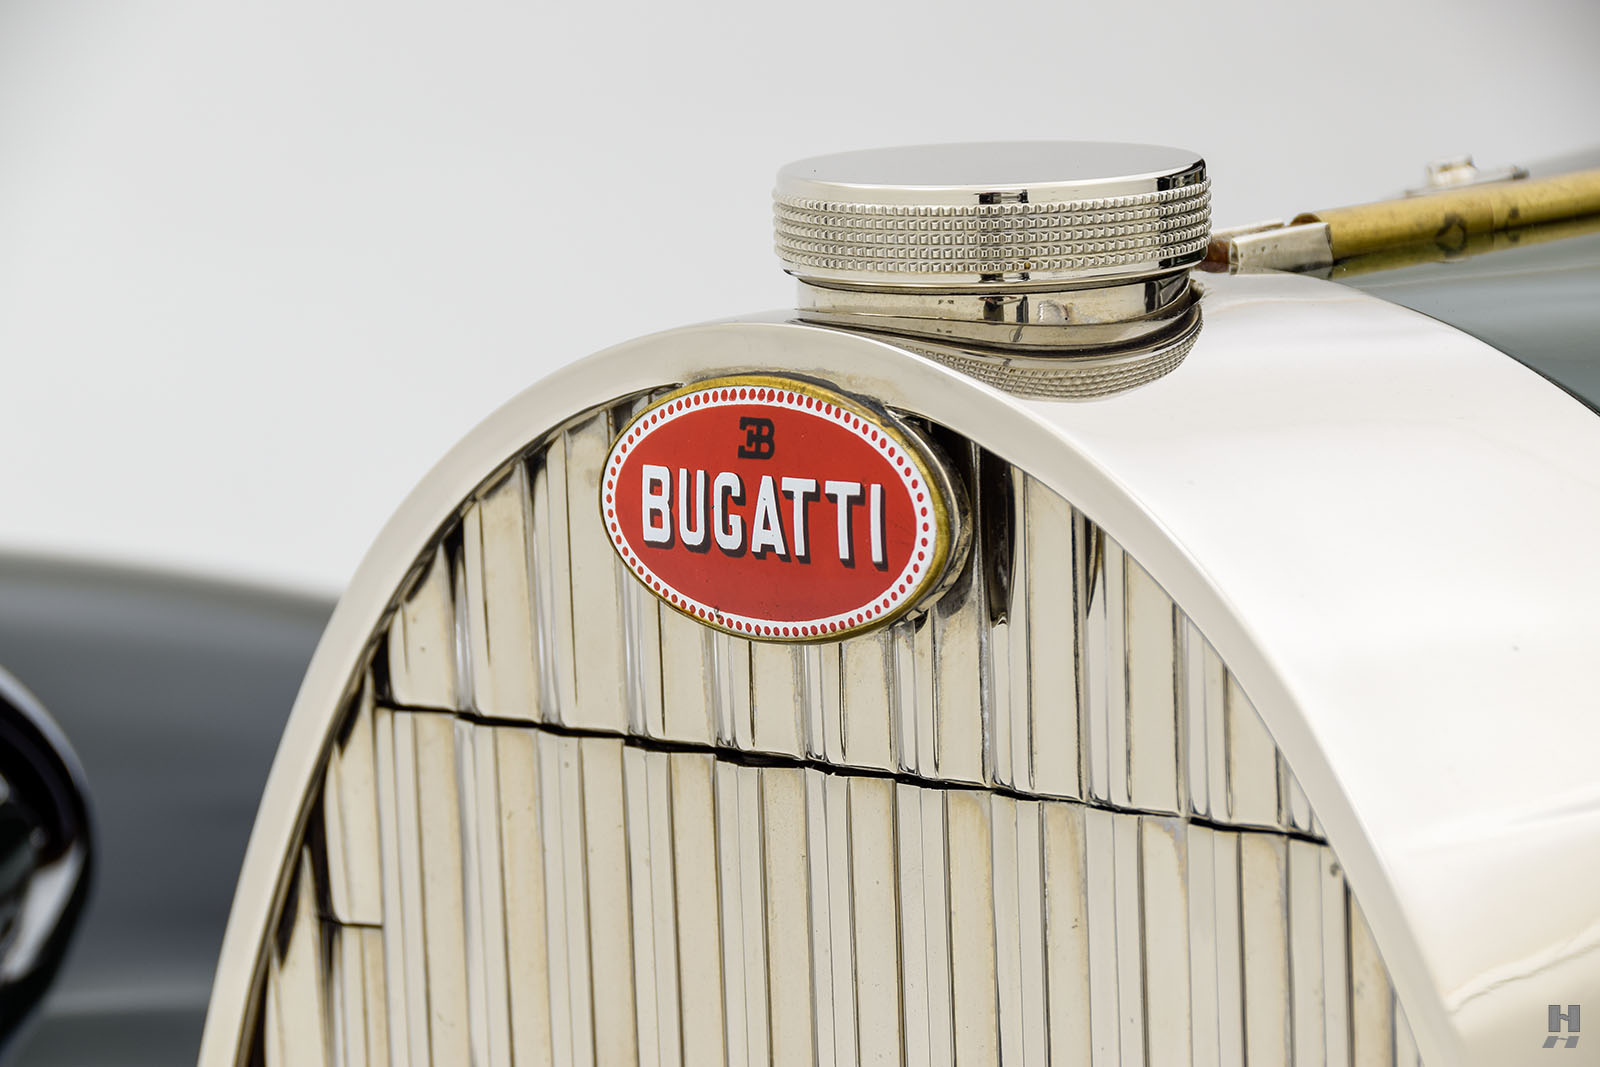 1935 bugatti type 57 ventoux